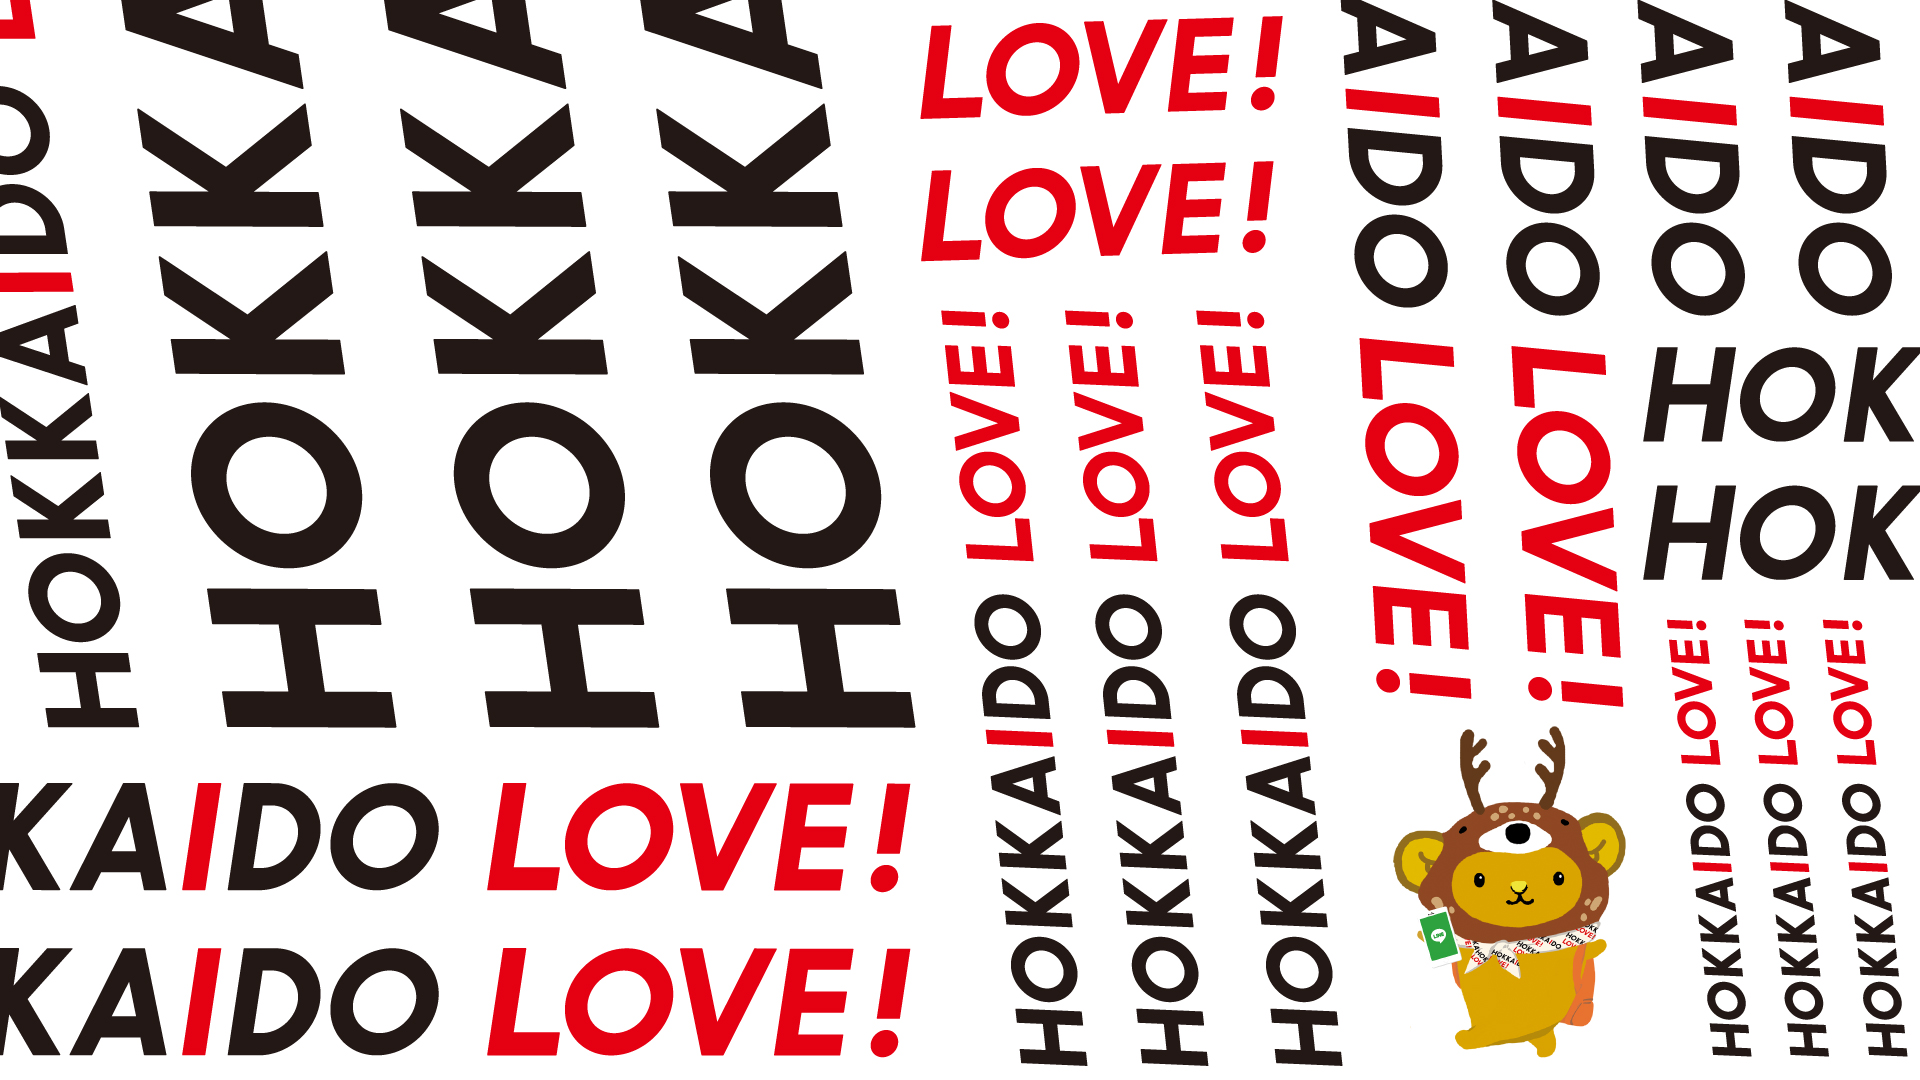 キュンちゃんオリジナル素材ダウンロードページ Hokkaido Love Line公式アカウント